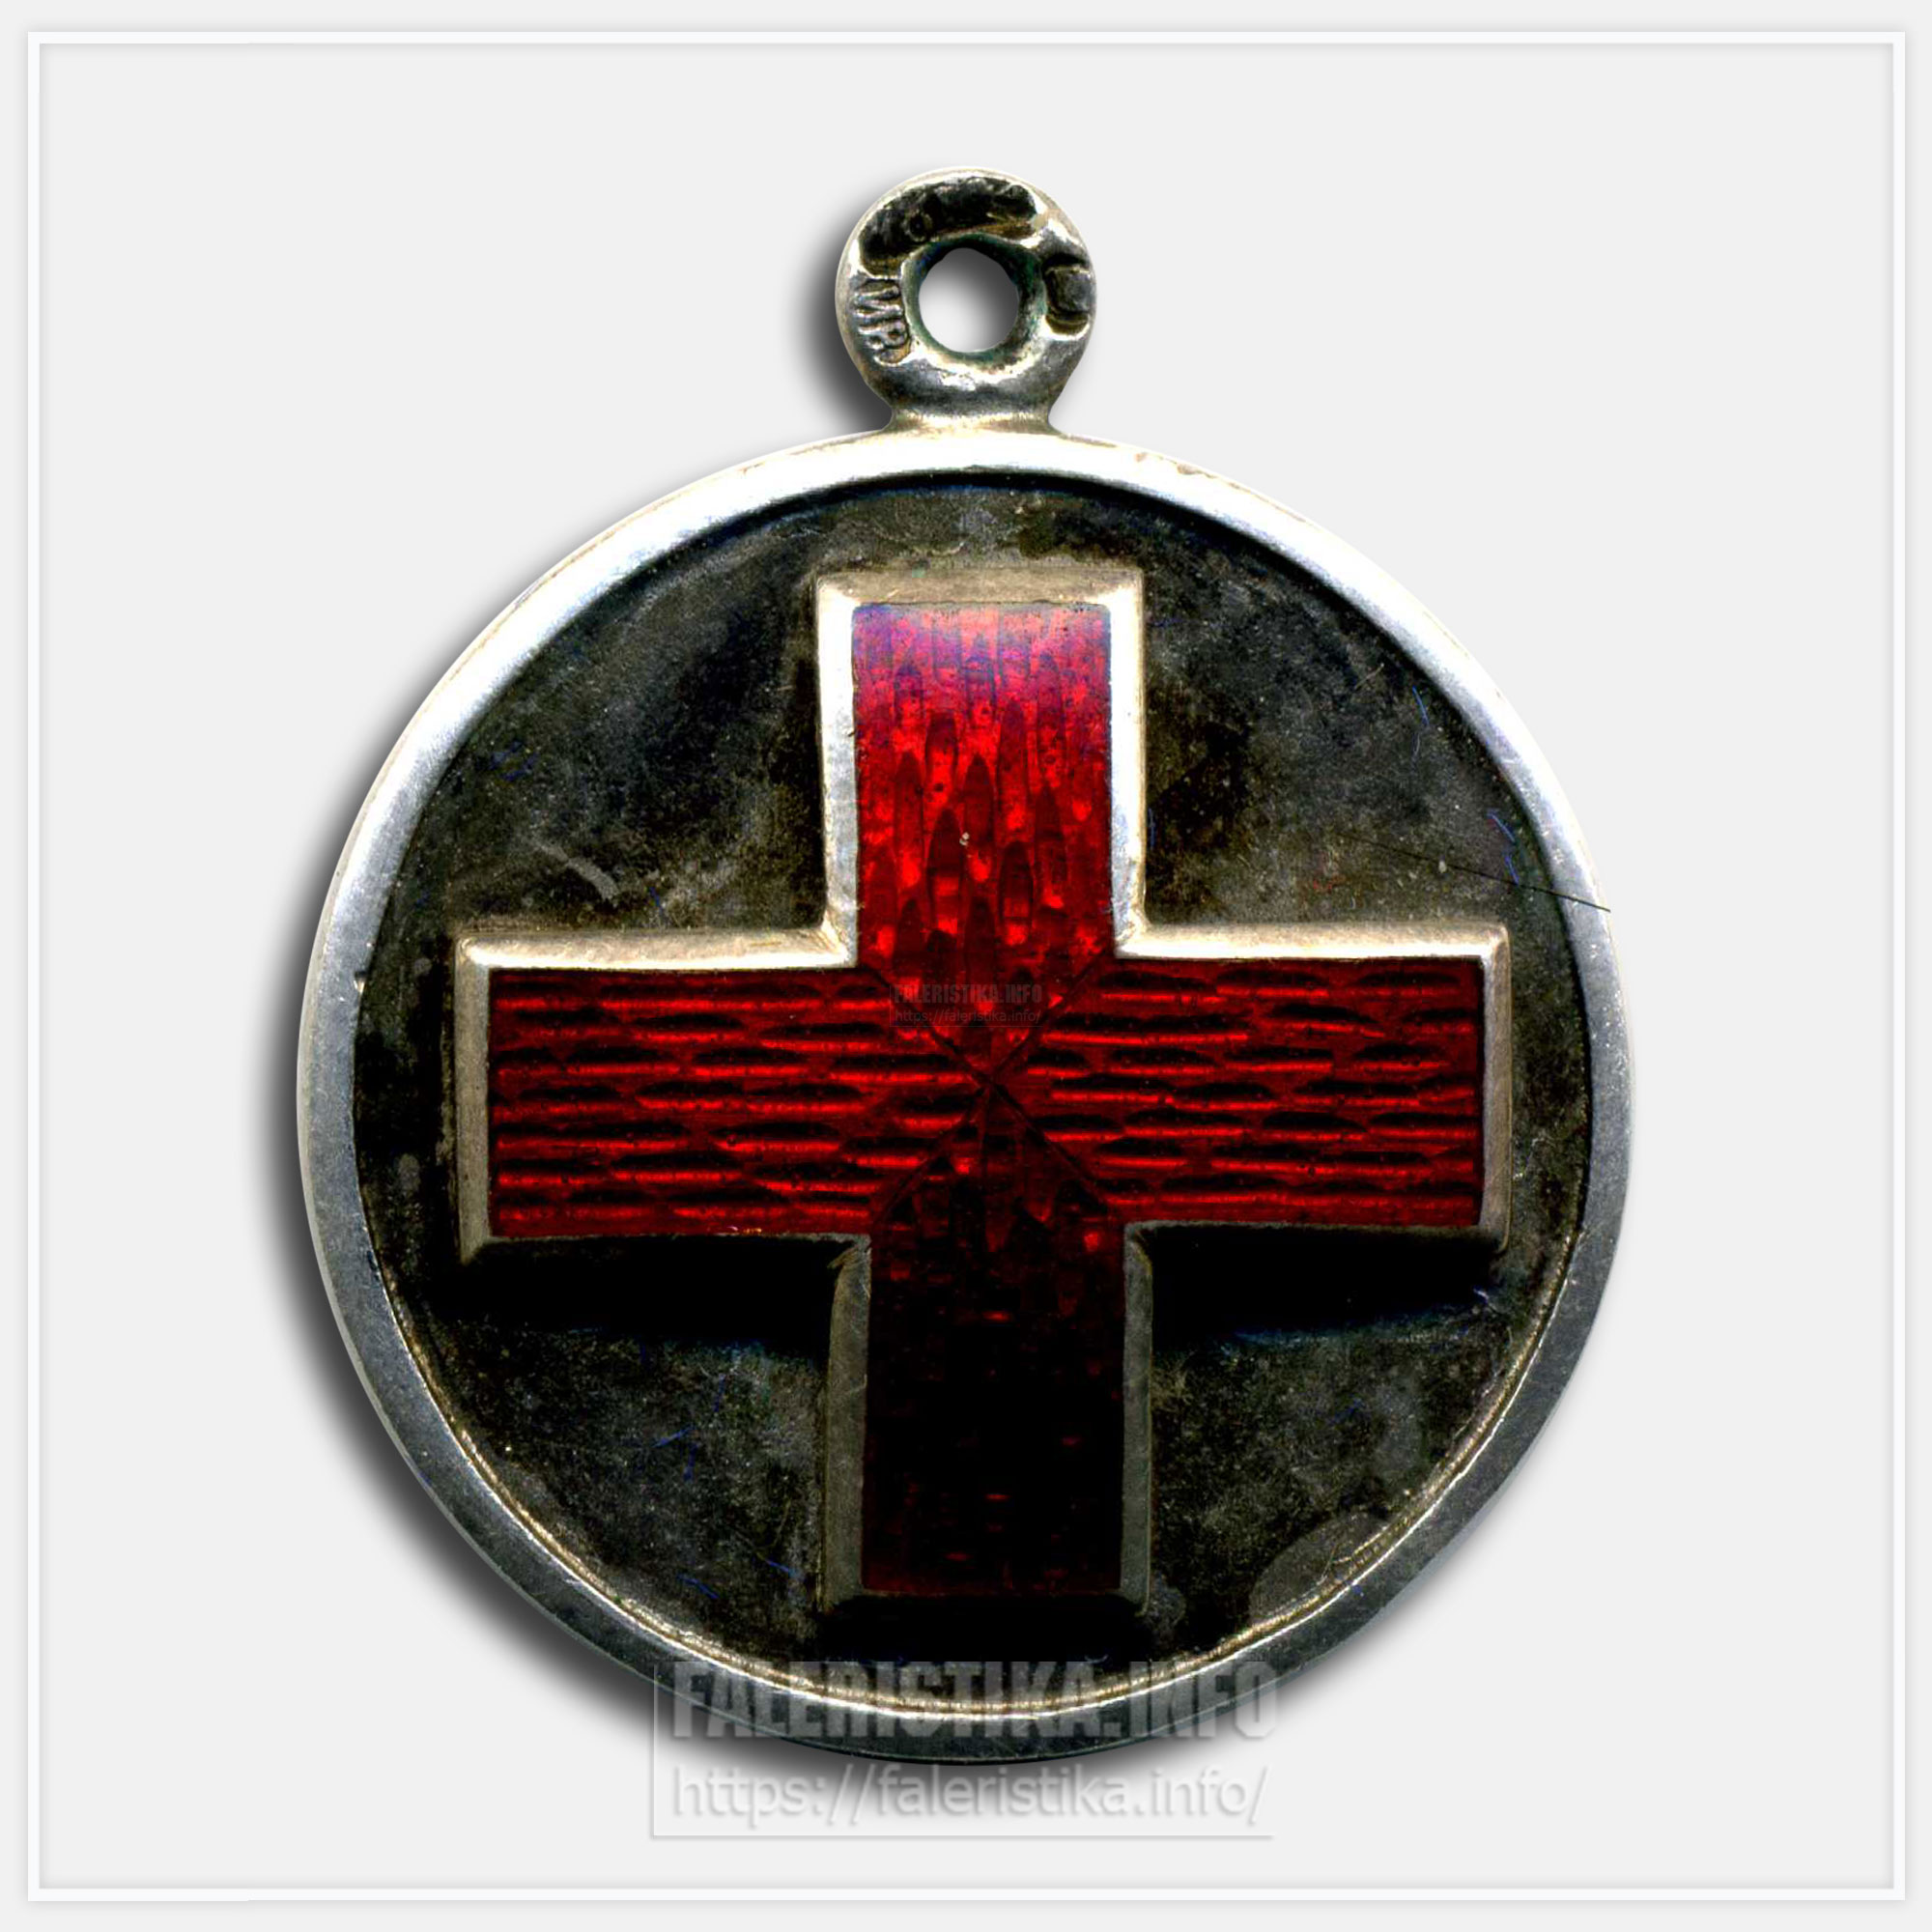 Медаль "Русско-японская война 1904-1905. Красный крест" Диаметр 24 мм